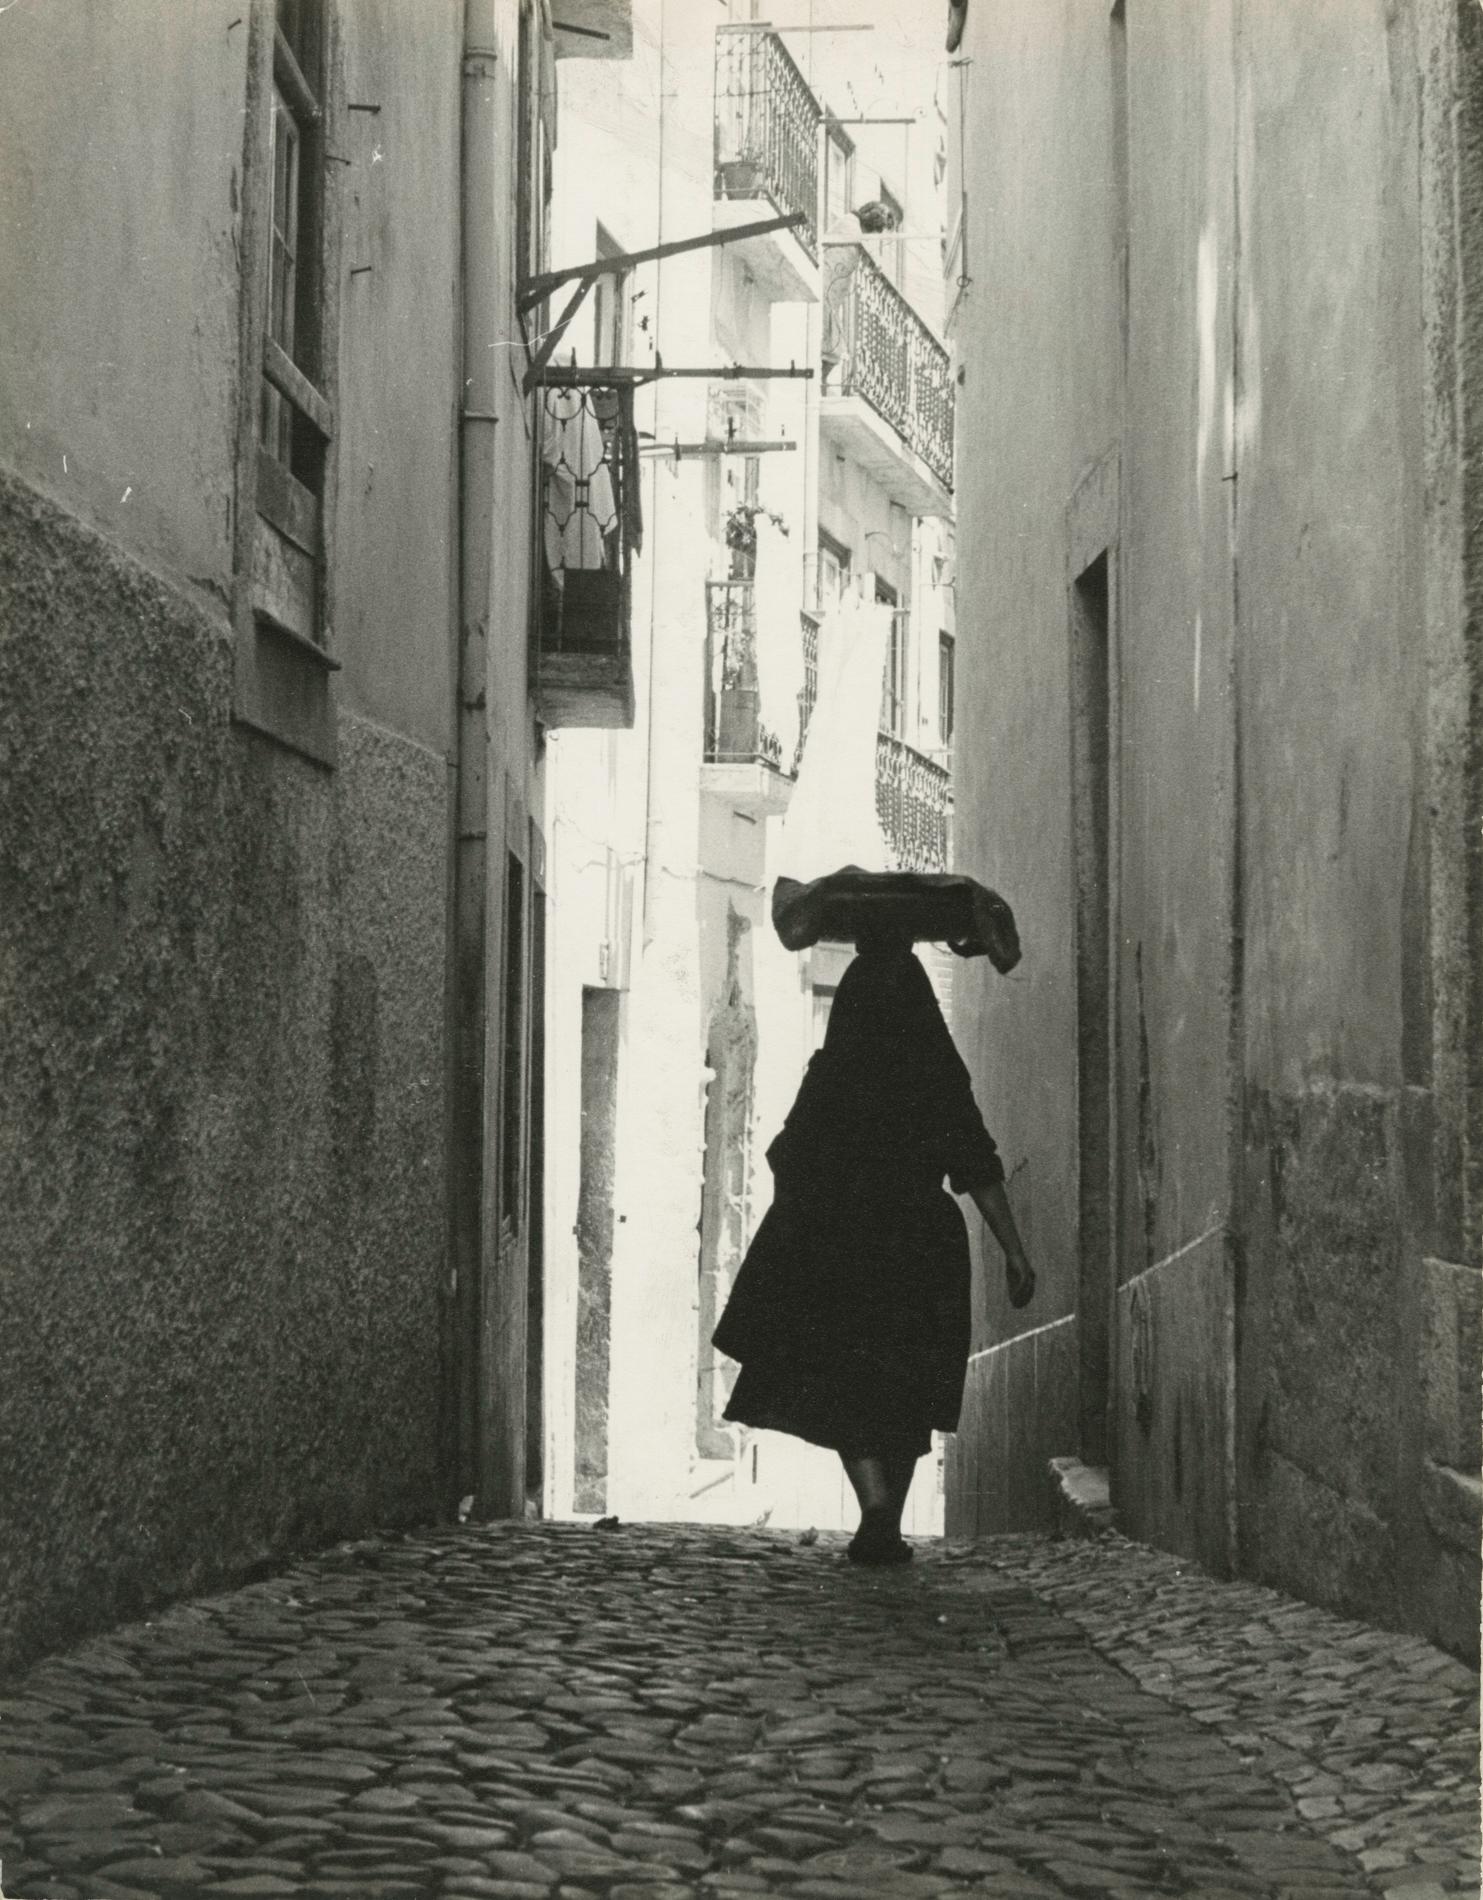 Ormond Gigli Figurative Photograph - Woman in the Alley, Portugal